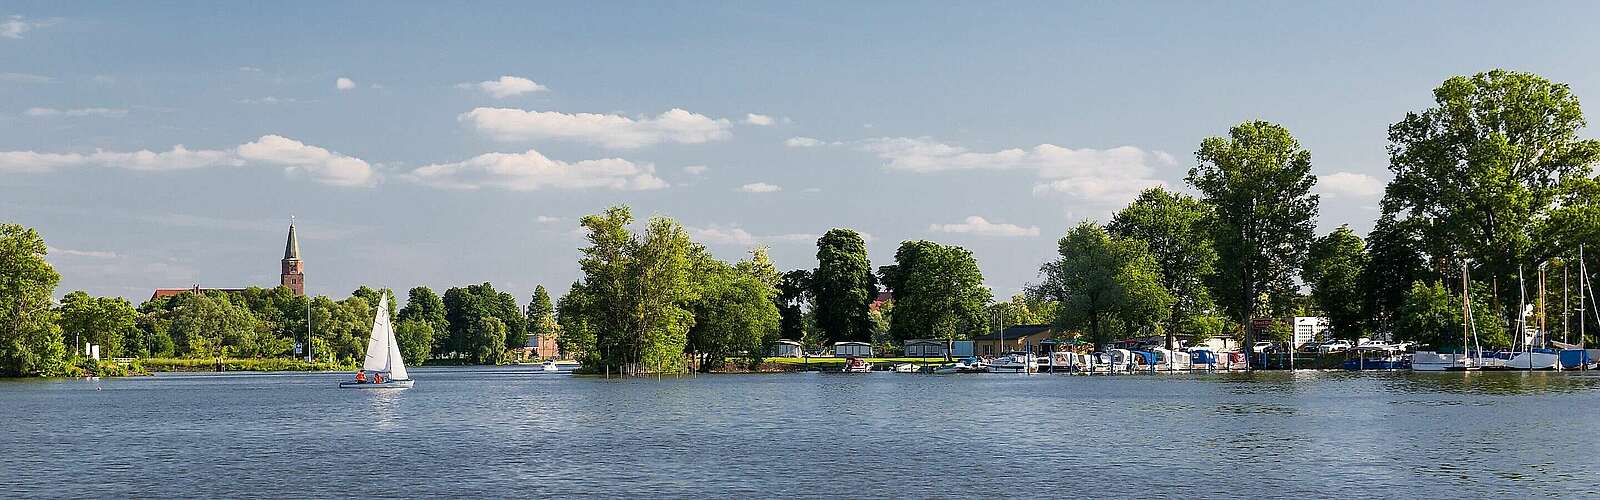 Sicht von der Brandenburger Havel,
        
    

        Foto: Fotograf / Lizenz - Media Import/Yorck Maecke